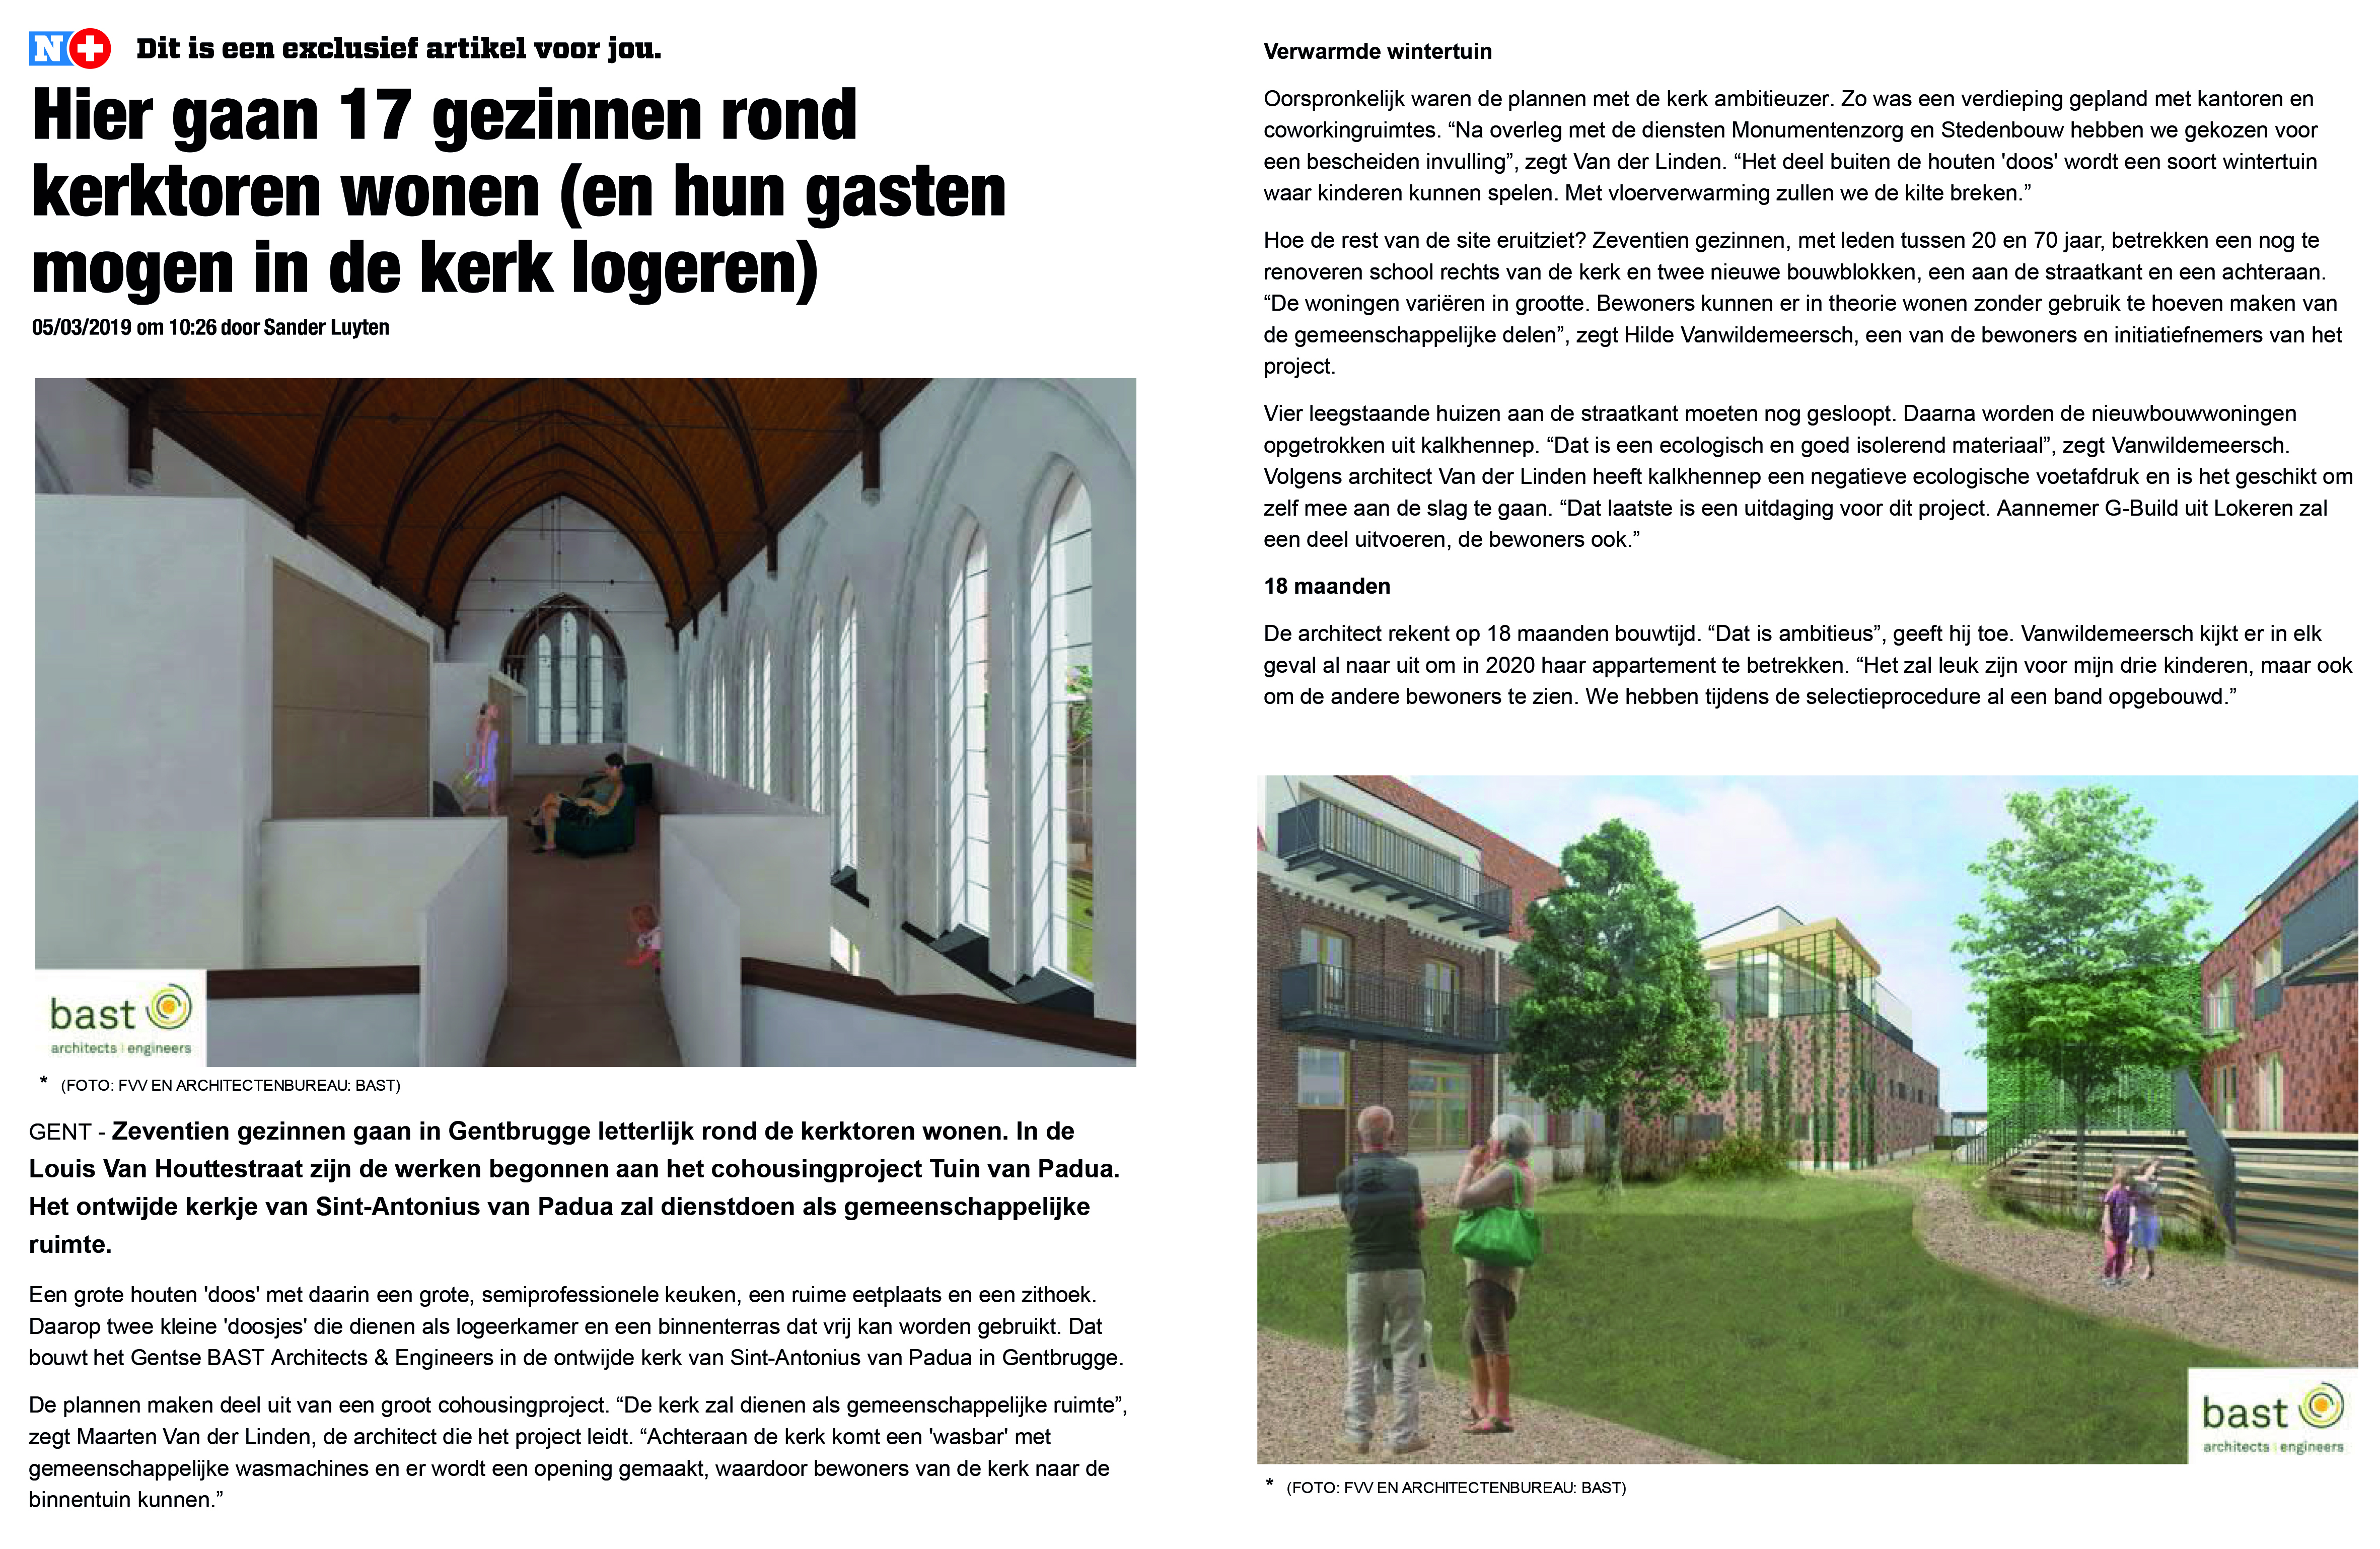 Co-housing project Padua in De Gentenaar!